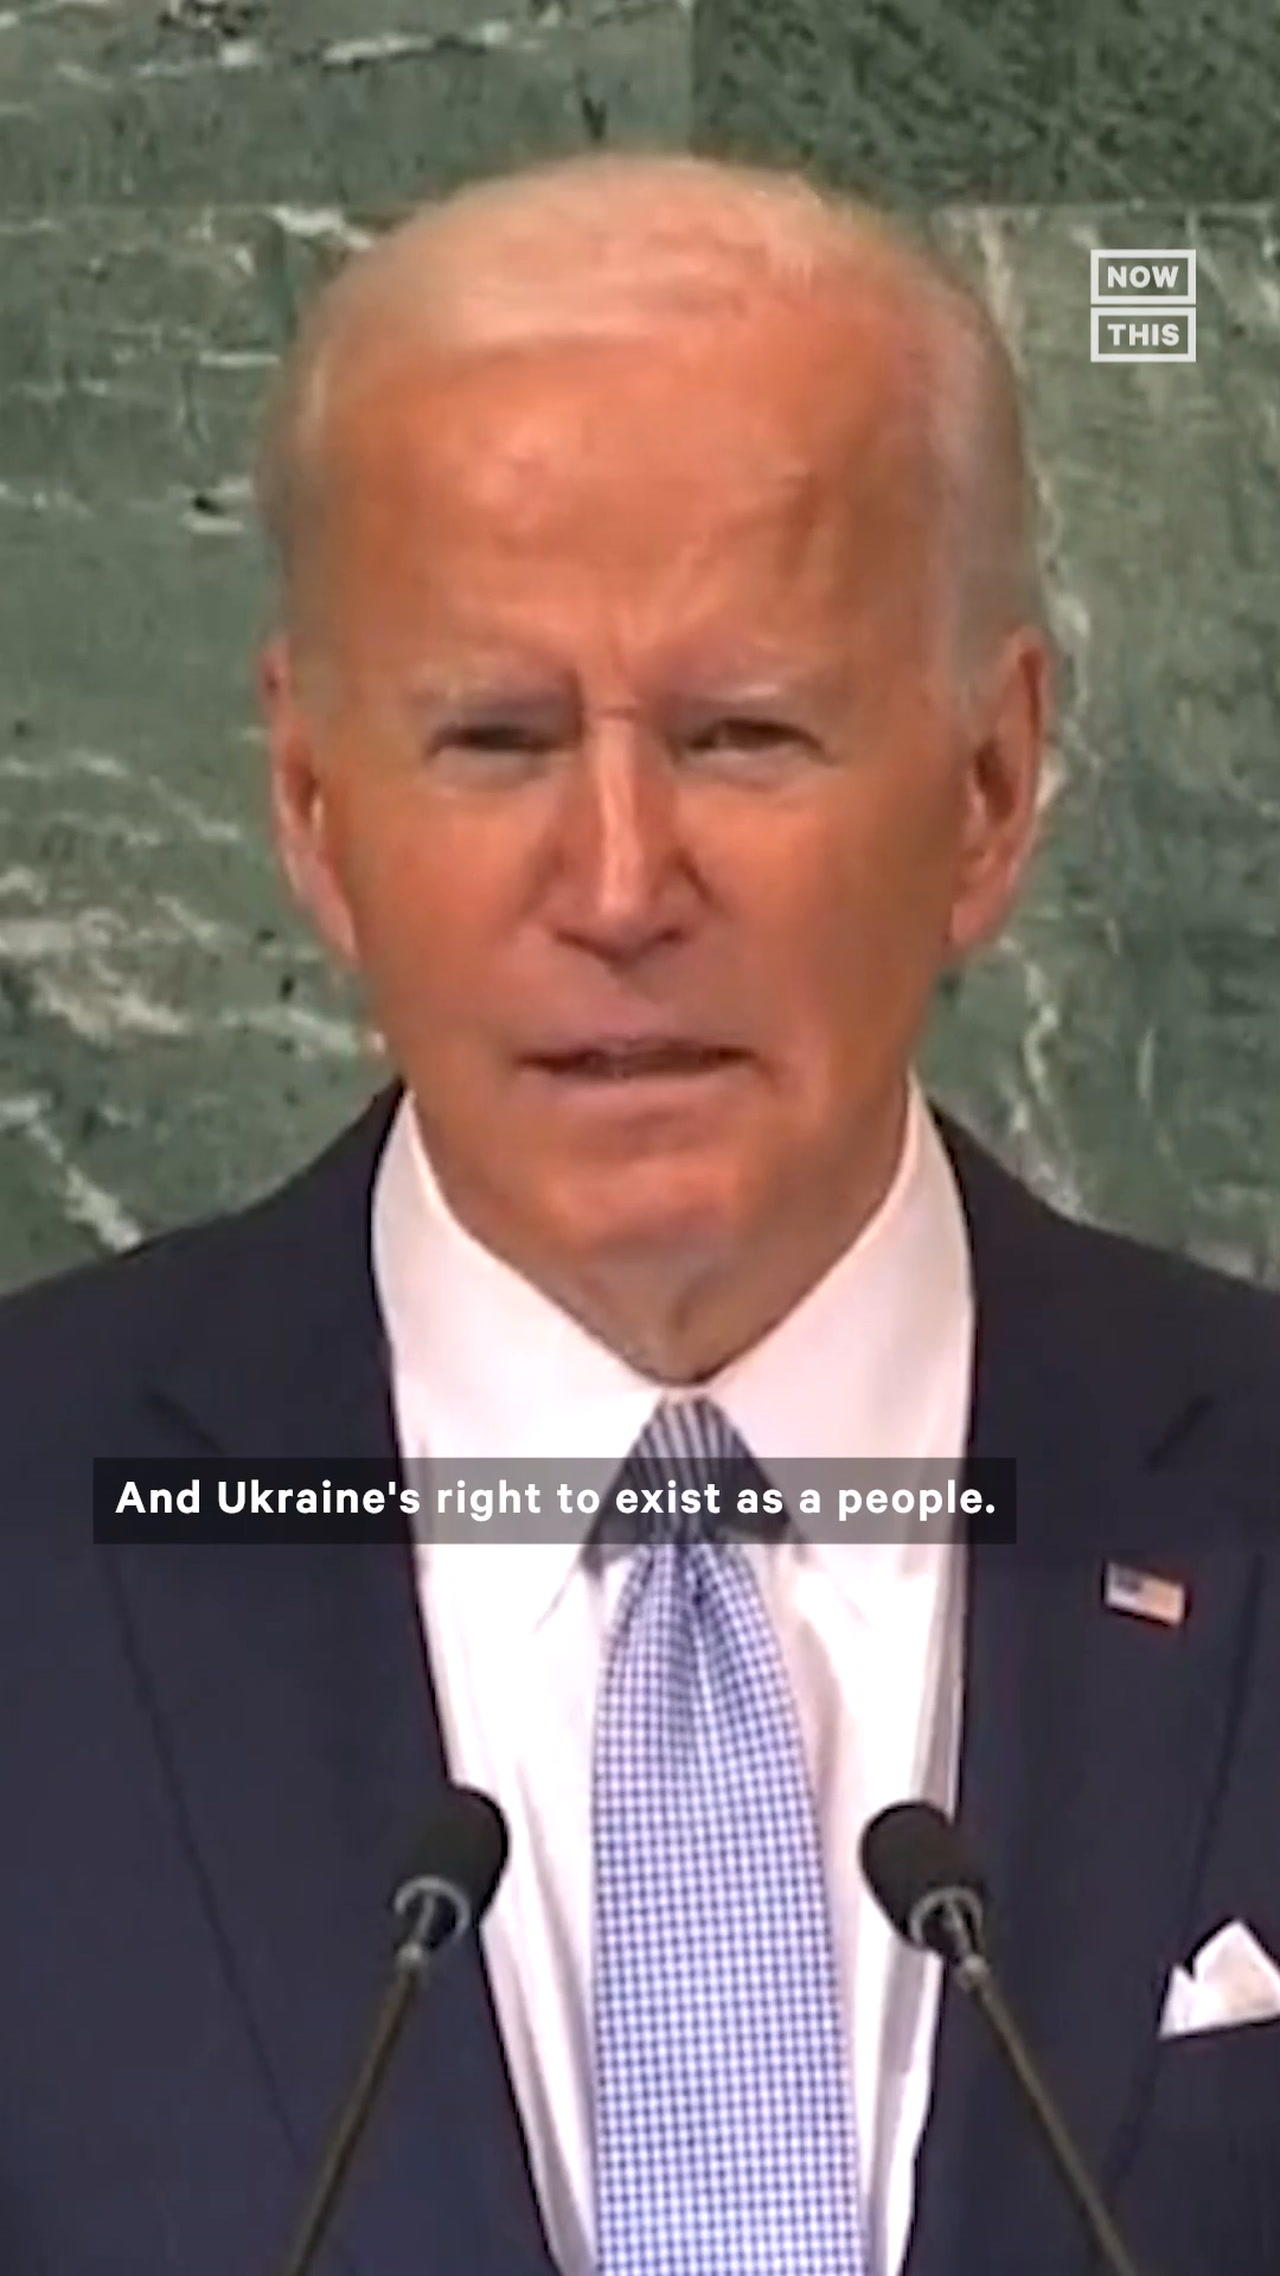 Biden Blasts Putin's War on Ukraine in Address to World Leaders